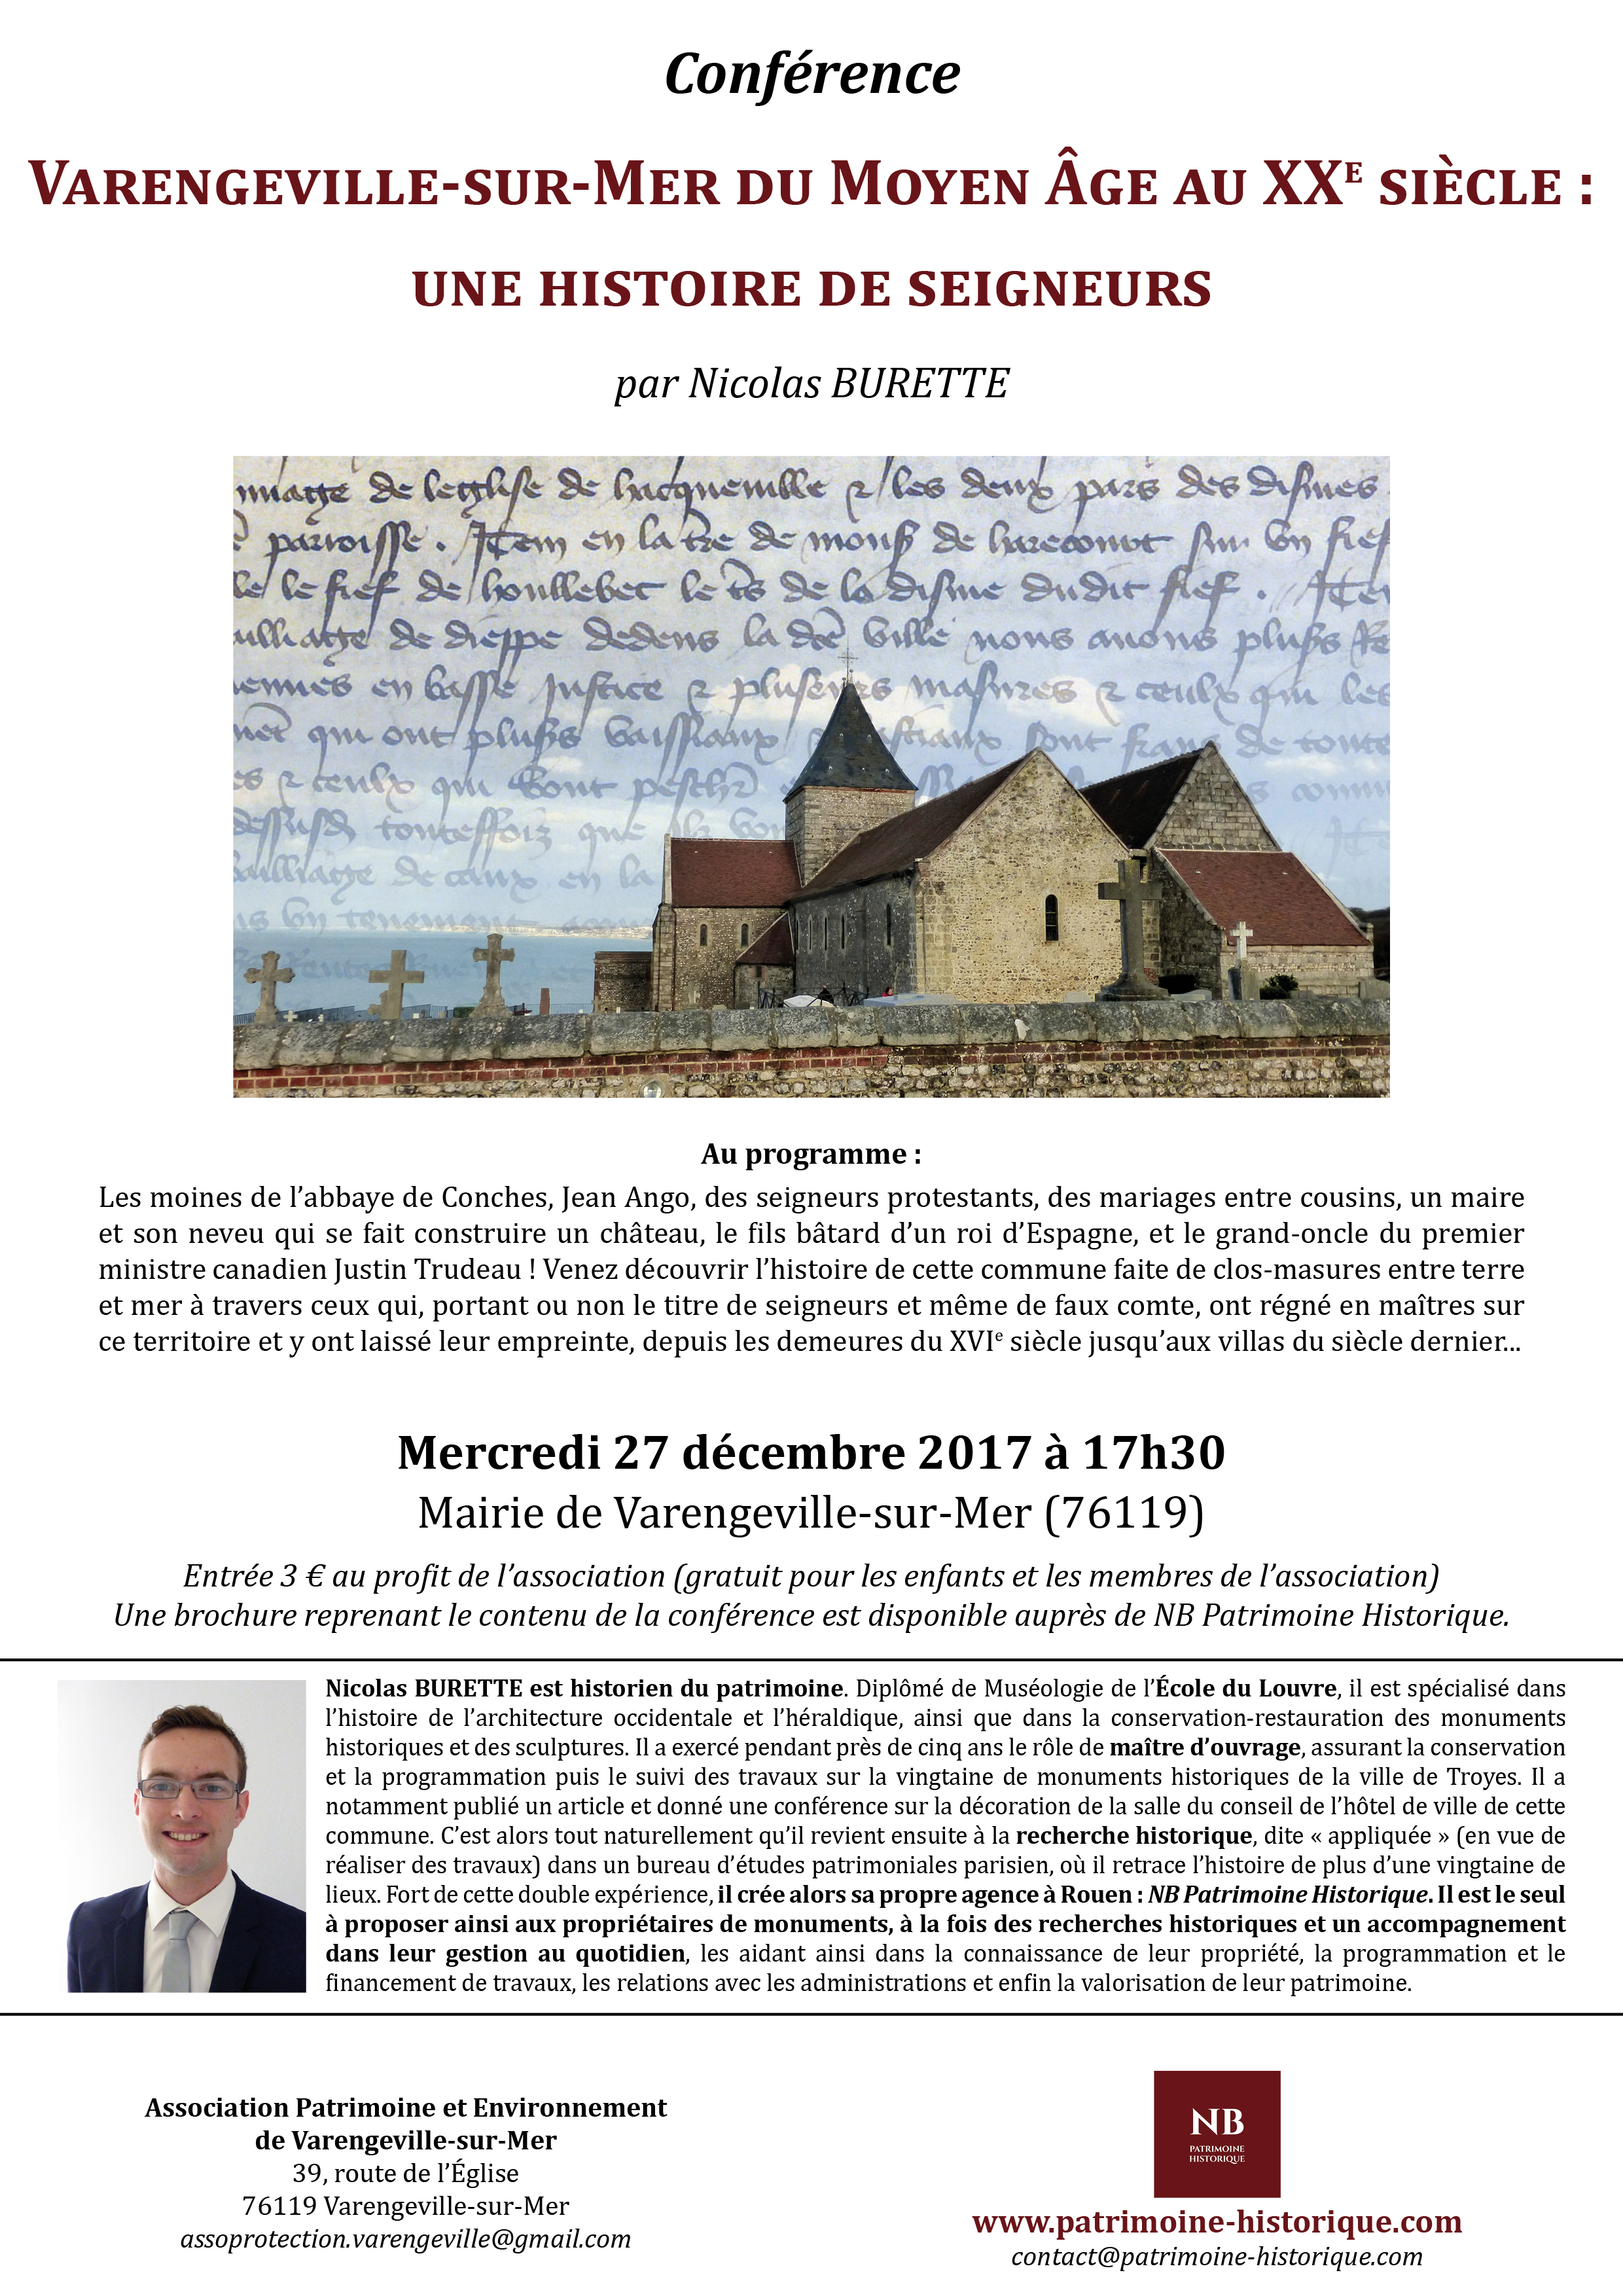 Conférence Nicolas BURETTE histoire Varengeville